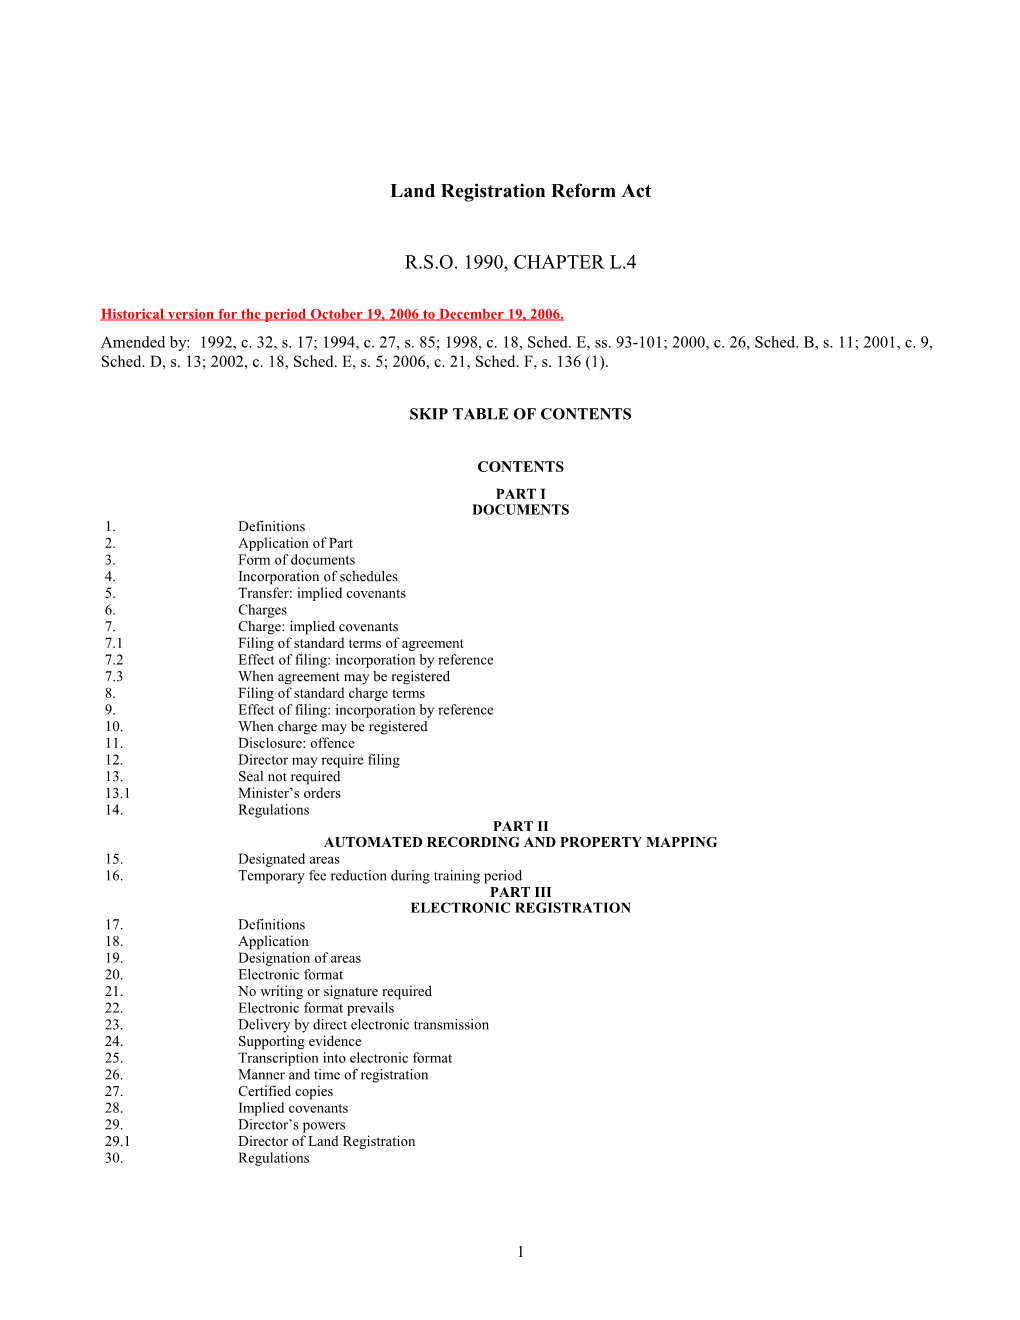 Land Registration Reform Act, R.S.O. 1990, C. L.4